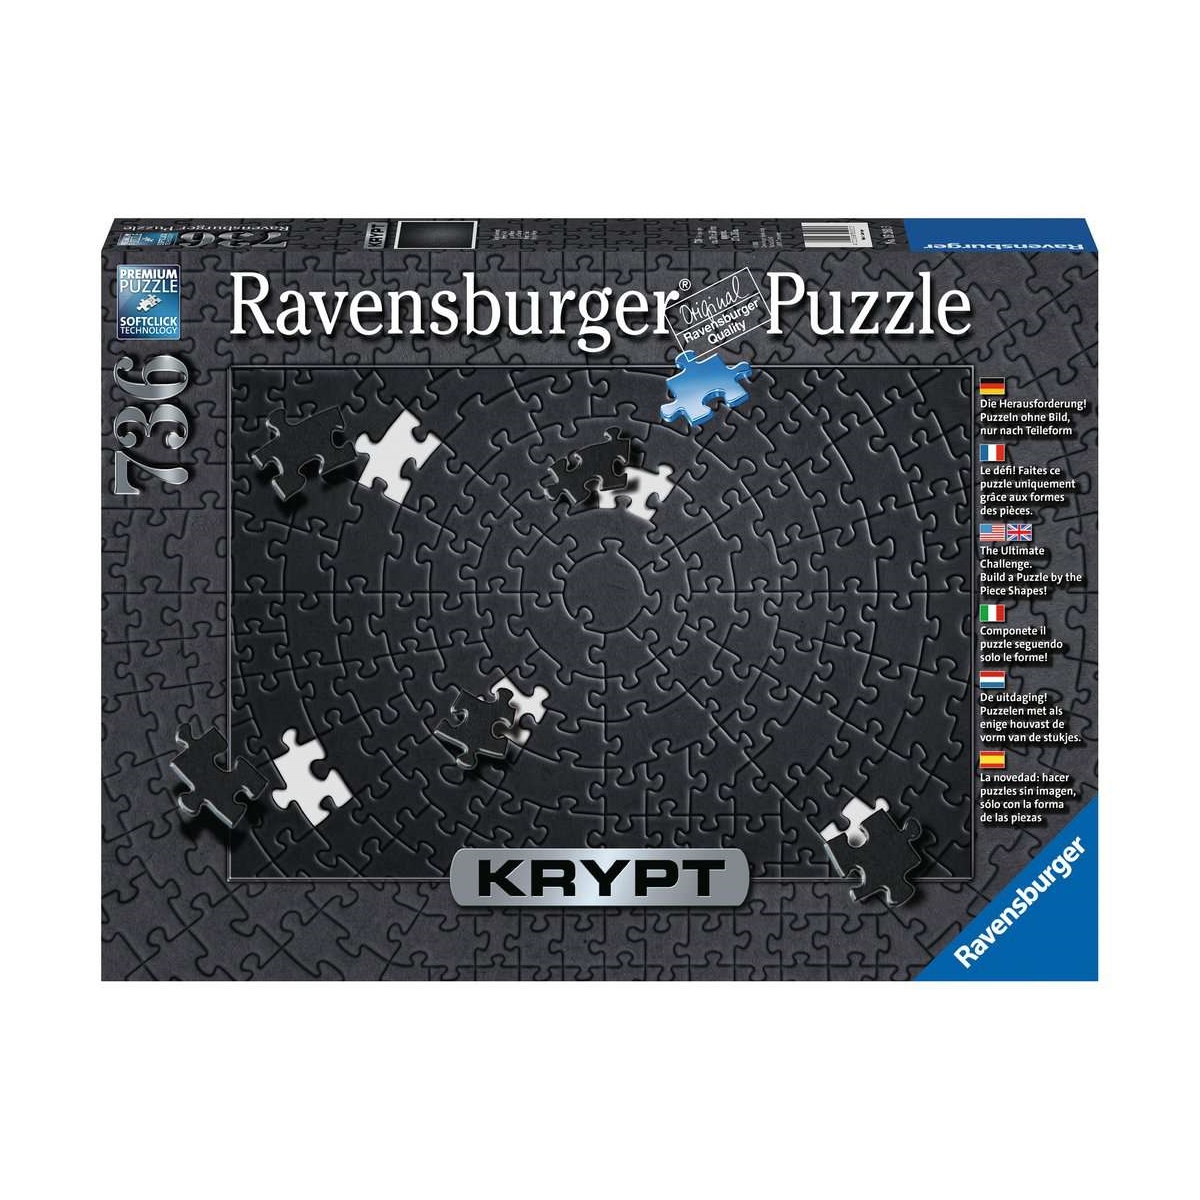 Ravensburger Puzzle 736 - Krypt Black - Krypt Black -Schwarzes Puzzle 736 Teile